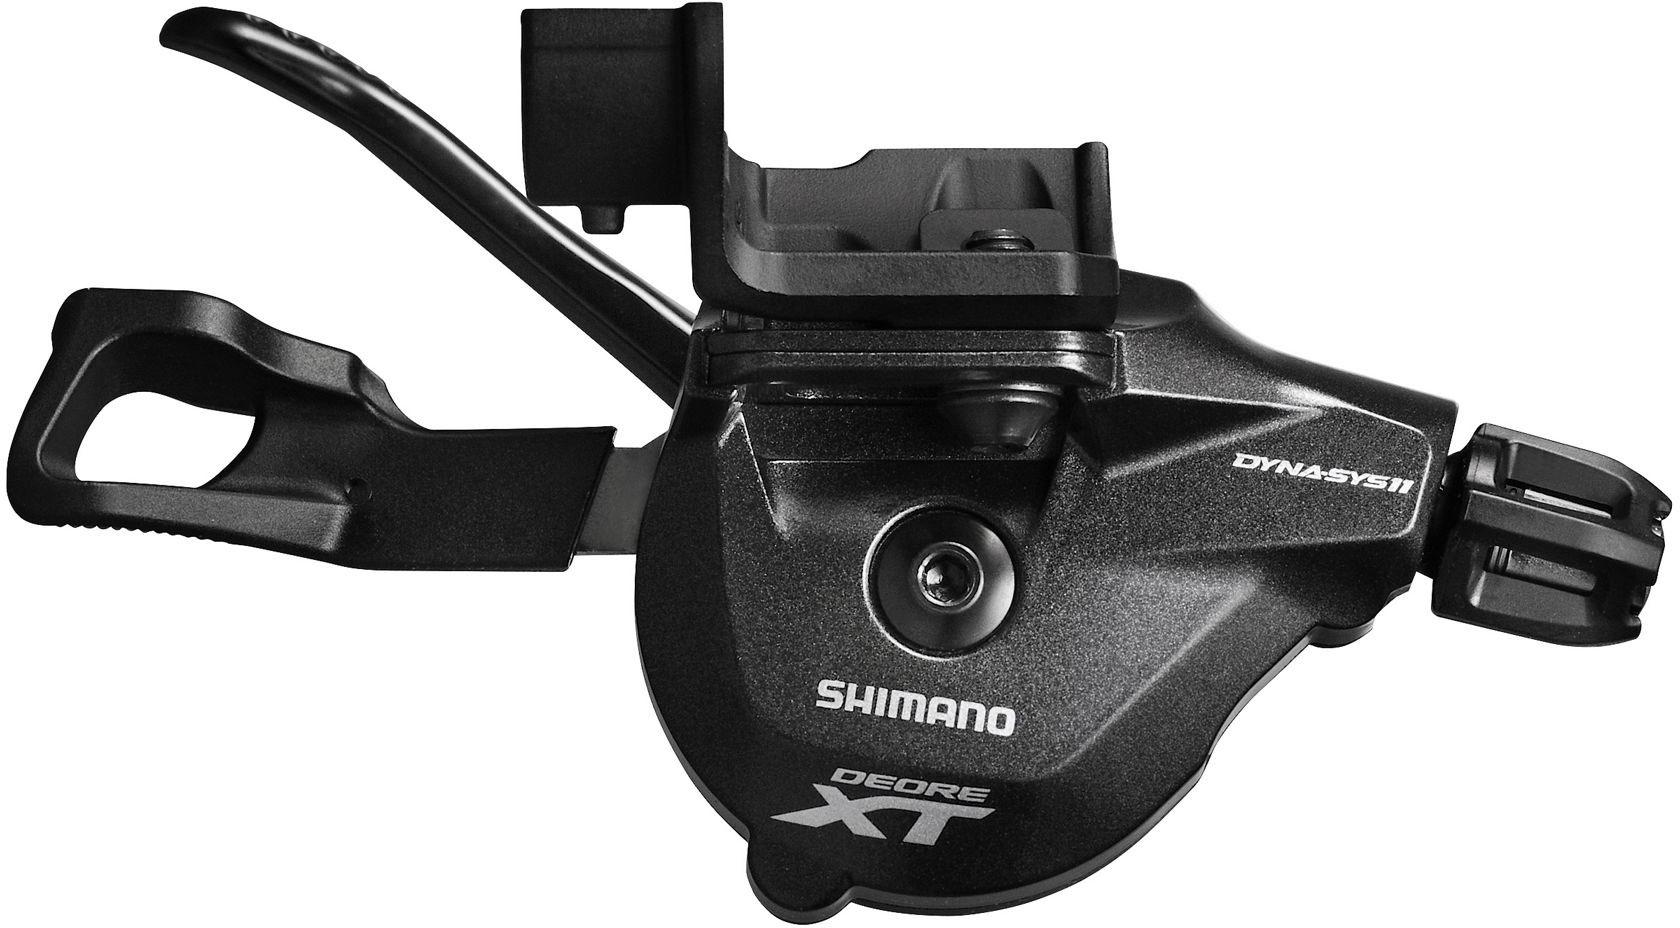 Shimano Deore Xt M8000 11 Speed Gear Shifter (i-spec Ii) - Black